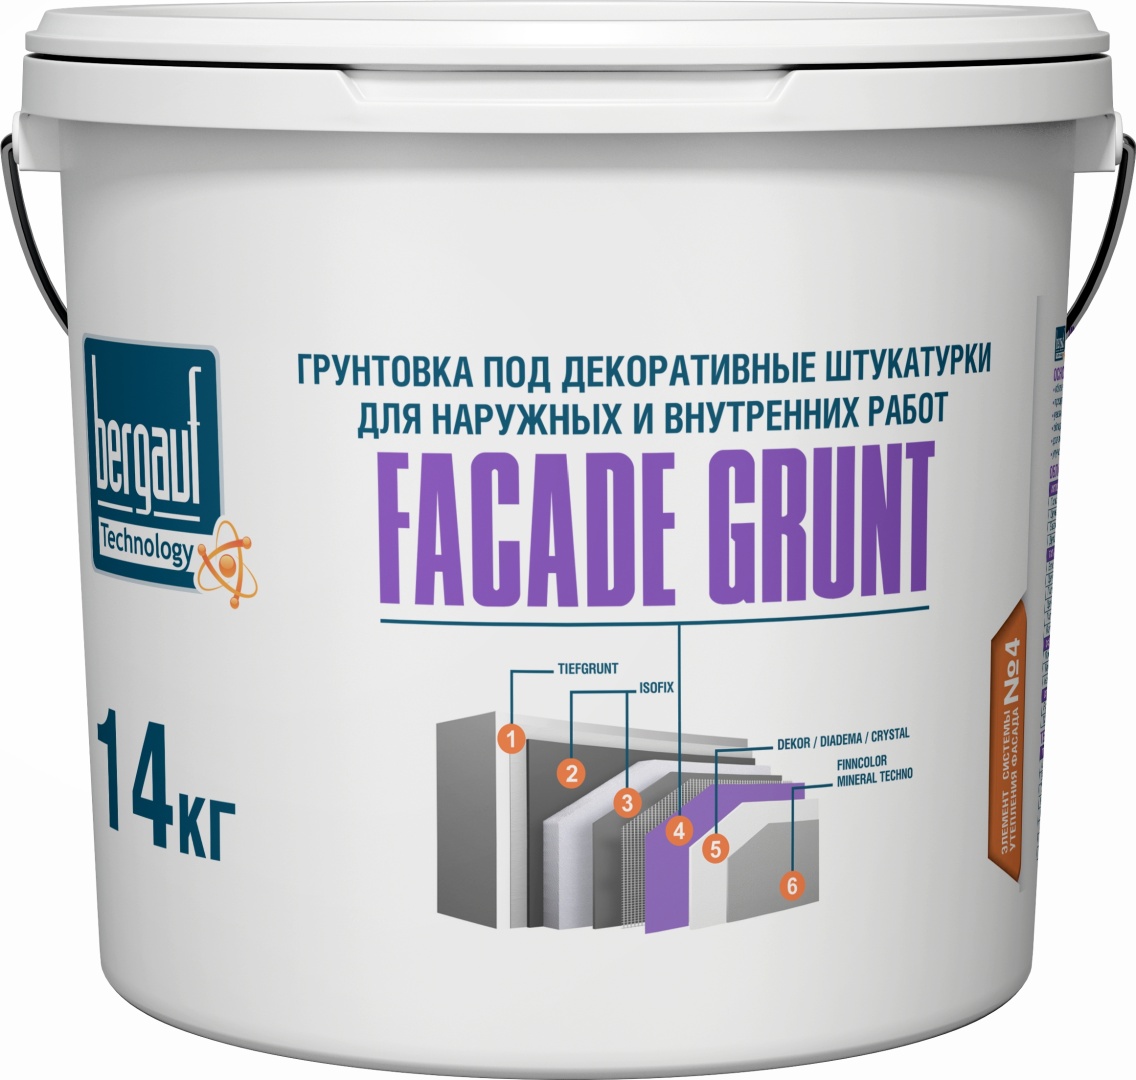 Купить Facade Grunt 14 кг Грунтовка под декоративные штукатурки для наружных и внутренних работ